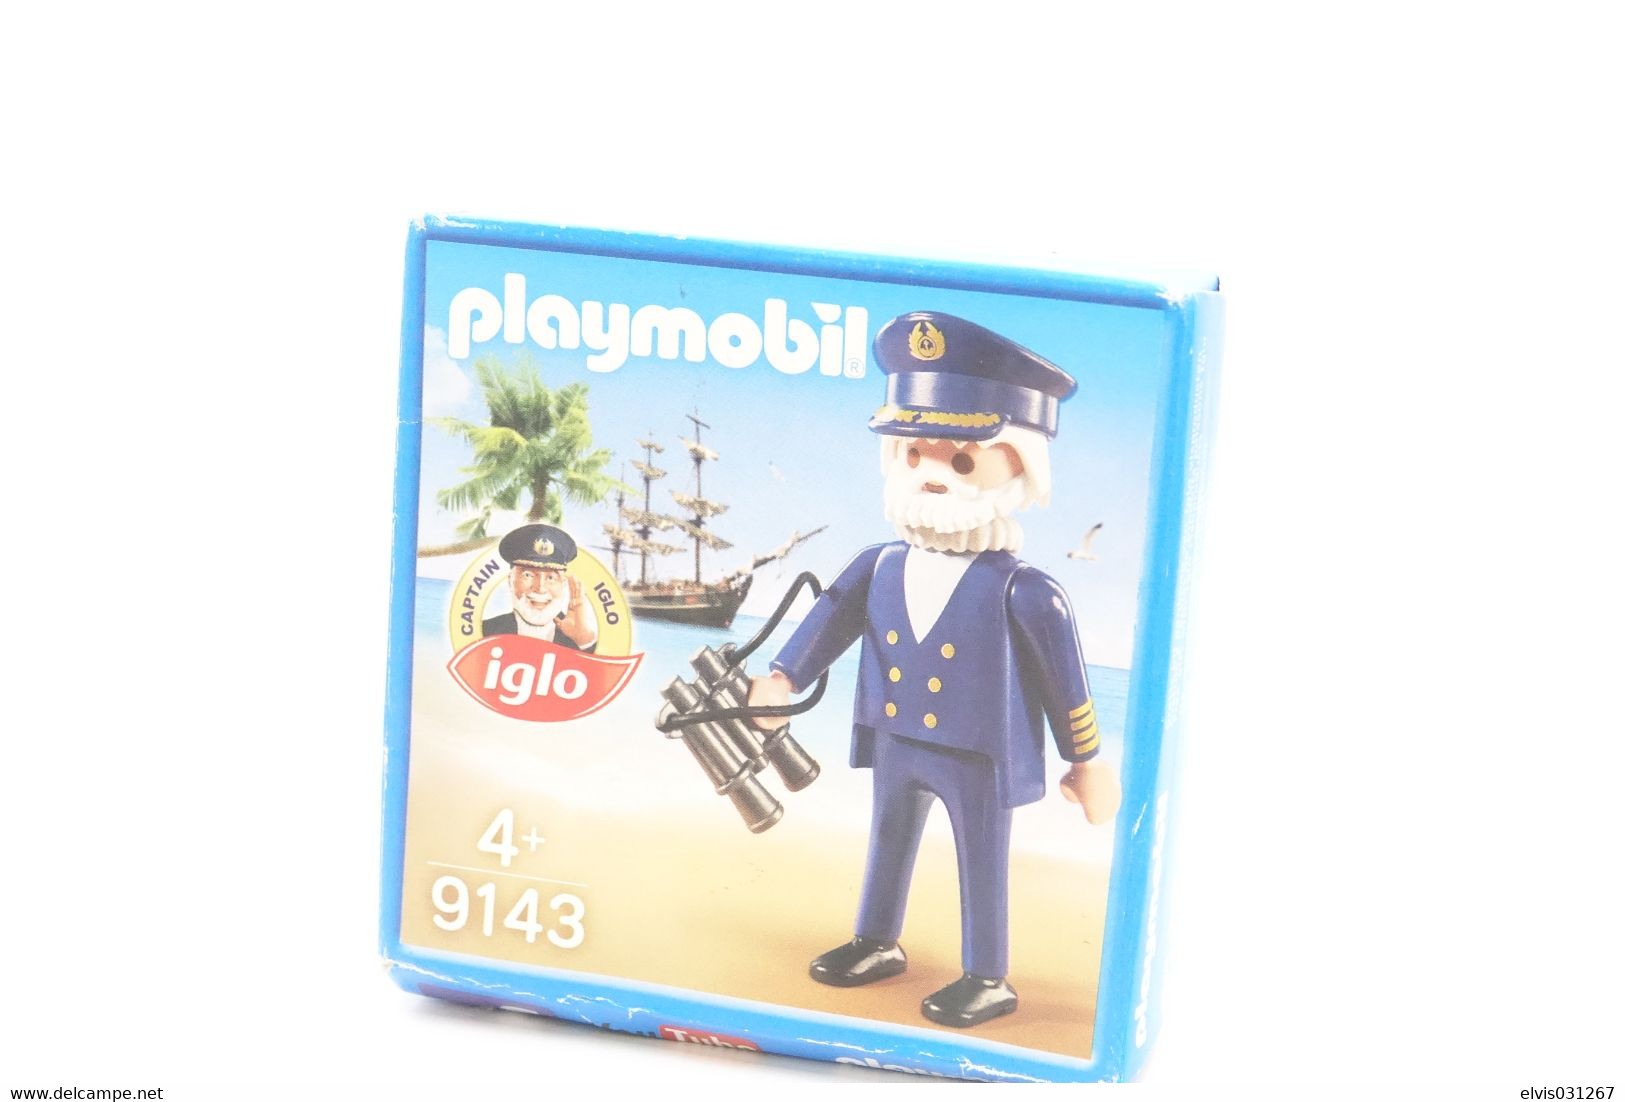 PLAYMOBIL - 9143 Captain Iglo With Original Box - Original Playmobil - Vintage - Kataloge